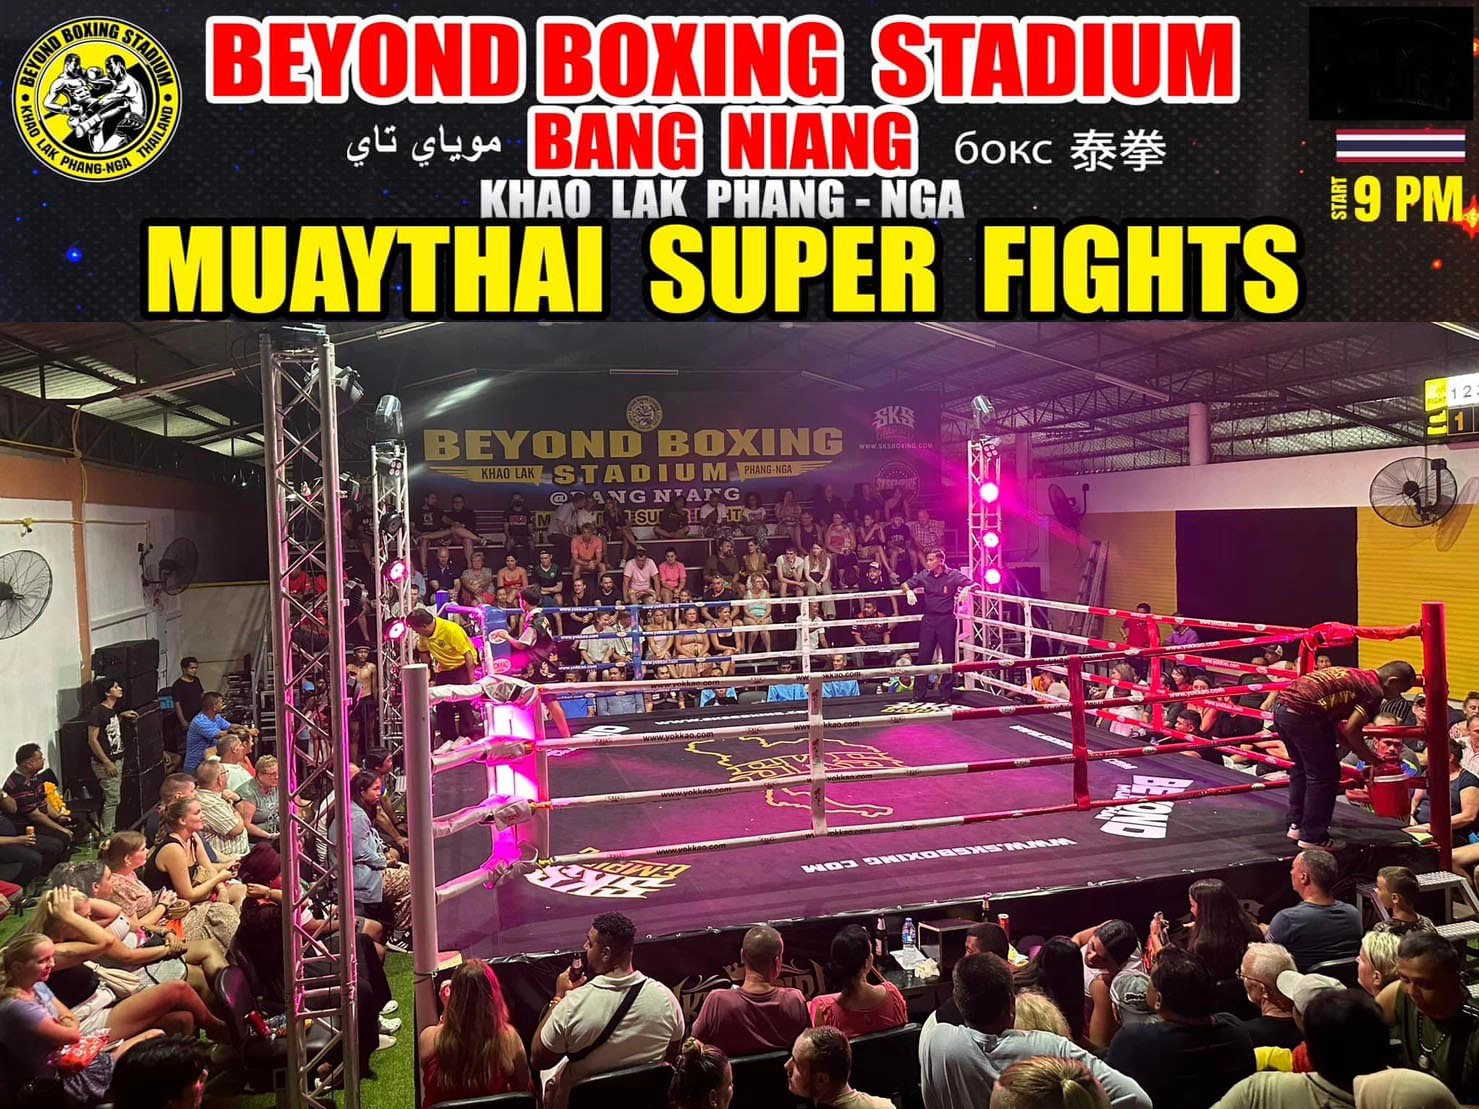 Beyond Boxing Stadium Bang Niang